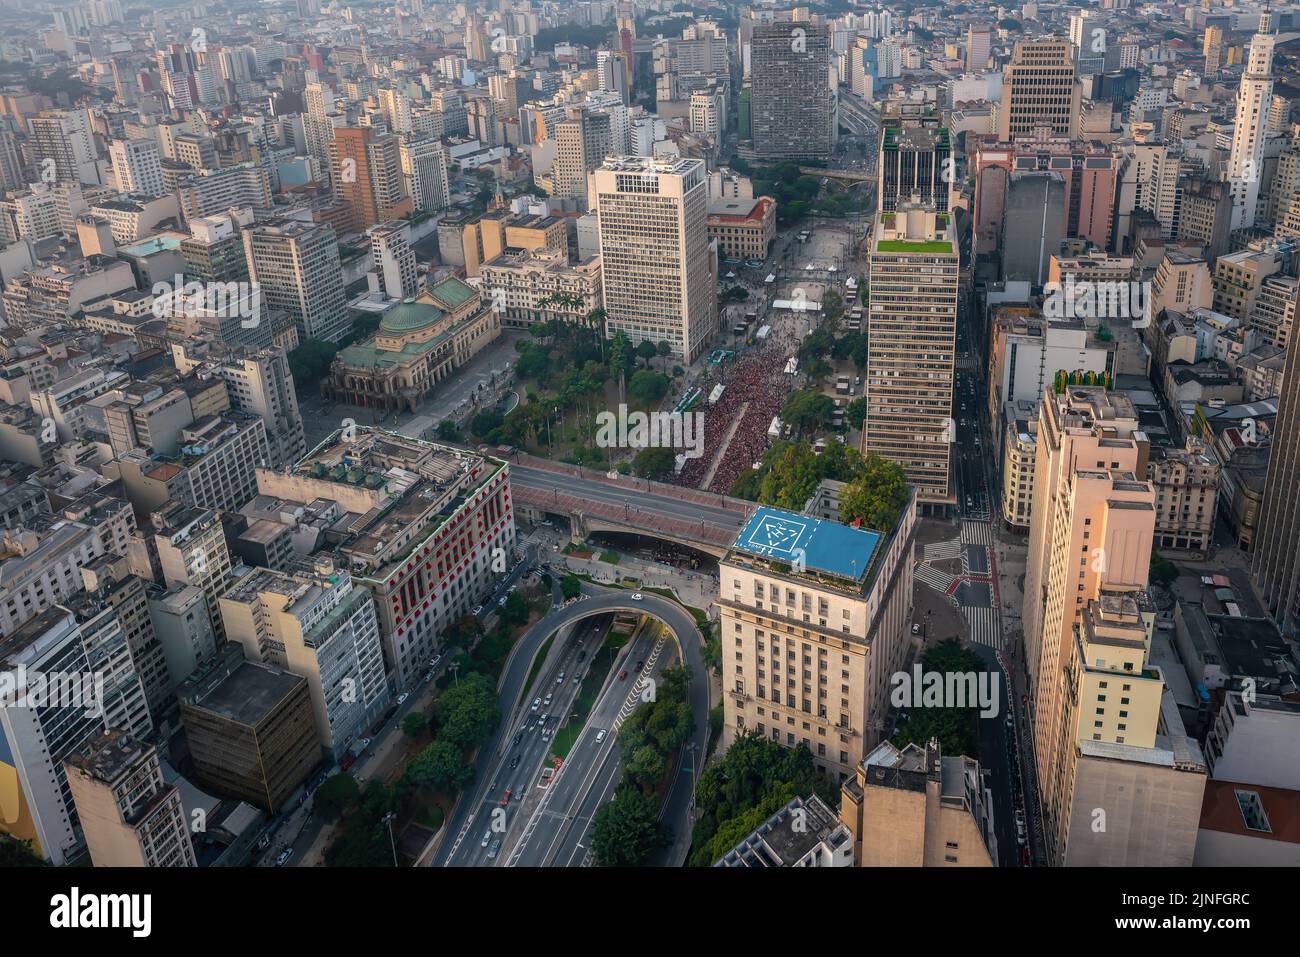 Vista aérea del centro histórico de Sao Paulo con Vale do Anhangabau, Viaduto do Cha, Teatro Municipal y Ayuntamiento - Sao Paulo, Brasil Foto de stock